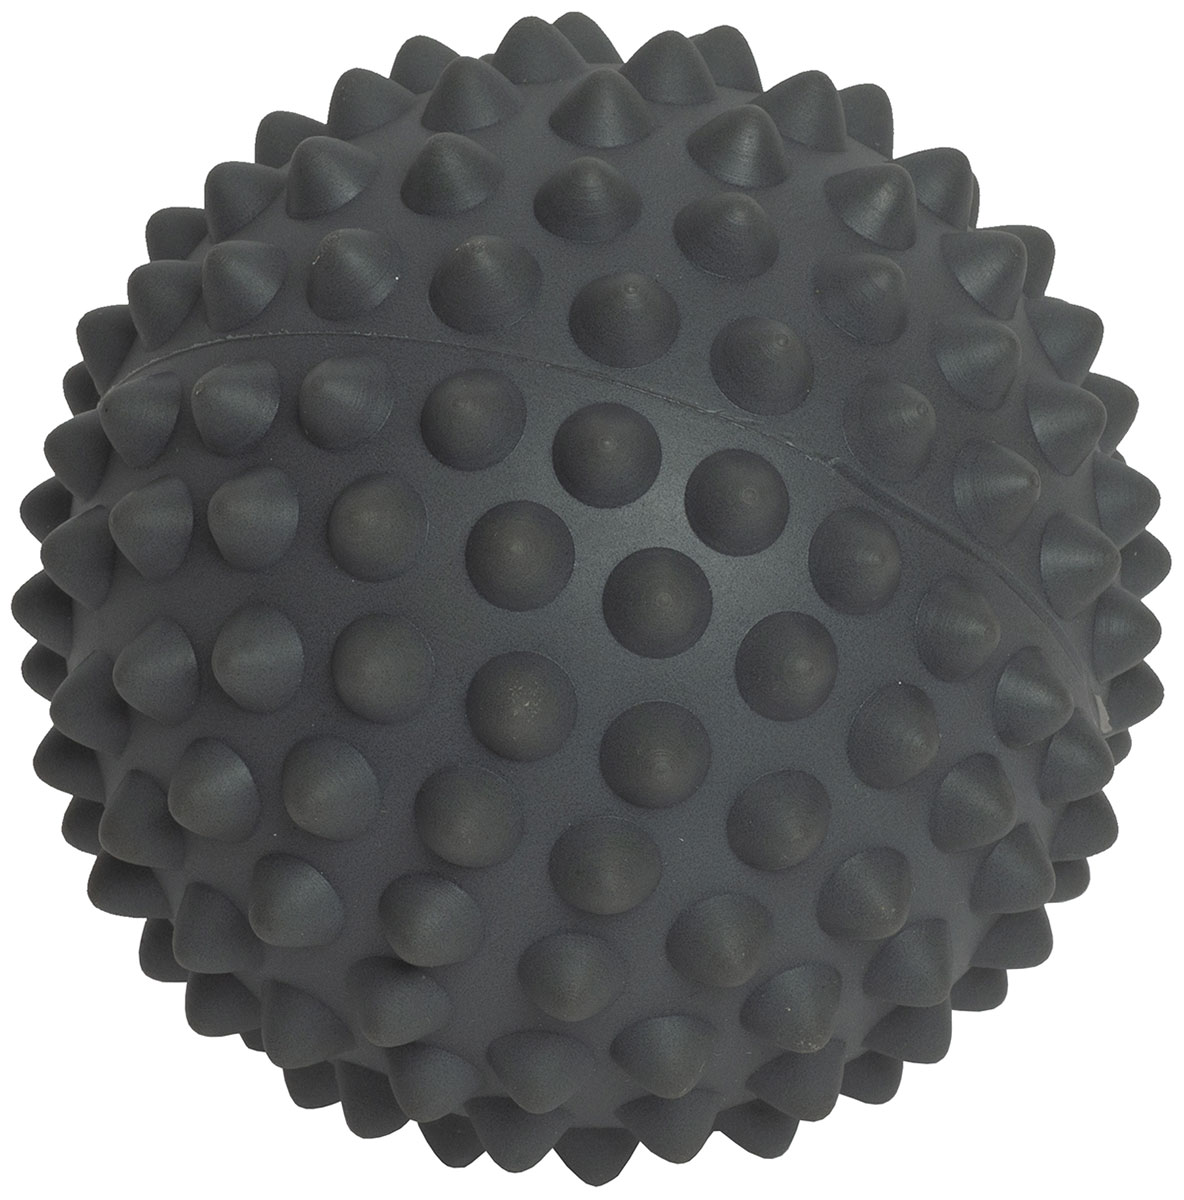 Мяч массажный Original FitTools 9 см, FT-WASP серый мяч original fittools массажный 9 см серый